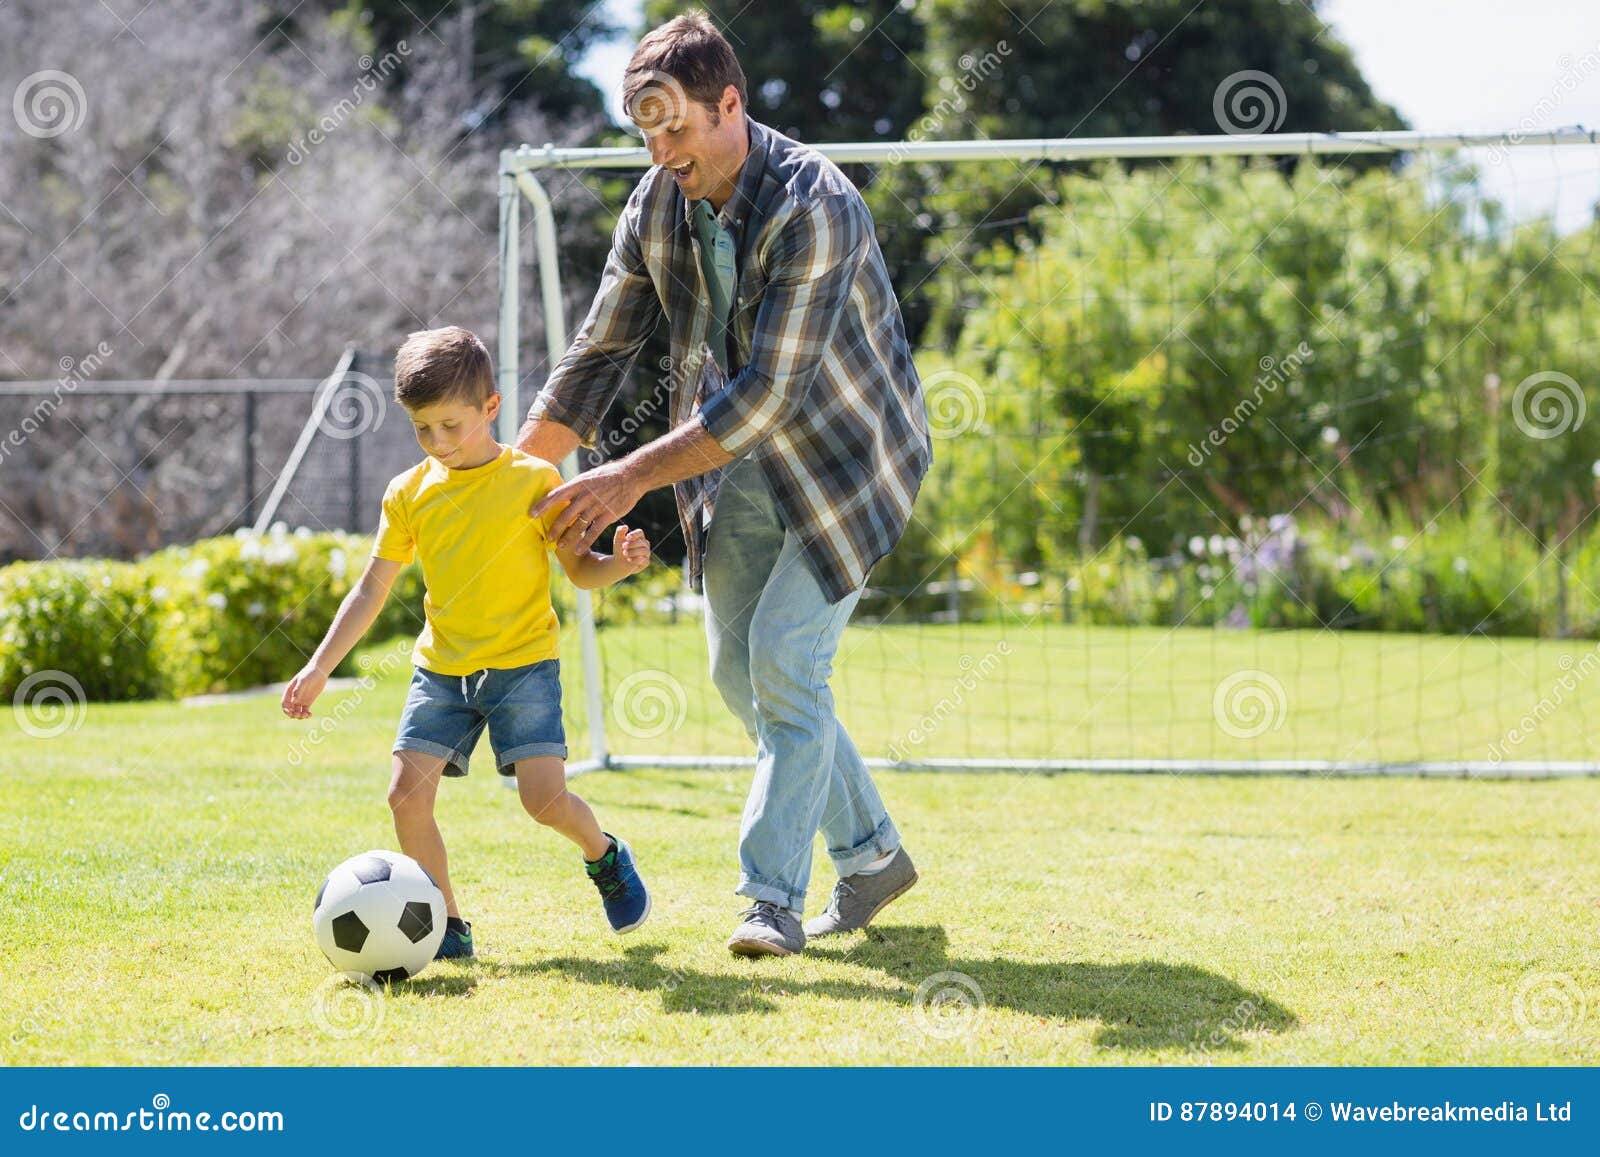 Папа играет в футбол. Отец и сын футбол. Отца и сына играющих в футбол. Папа с сыном играют в футбол. Мальчик с папой играет в футбол.